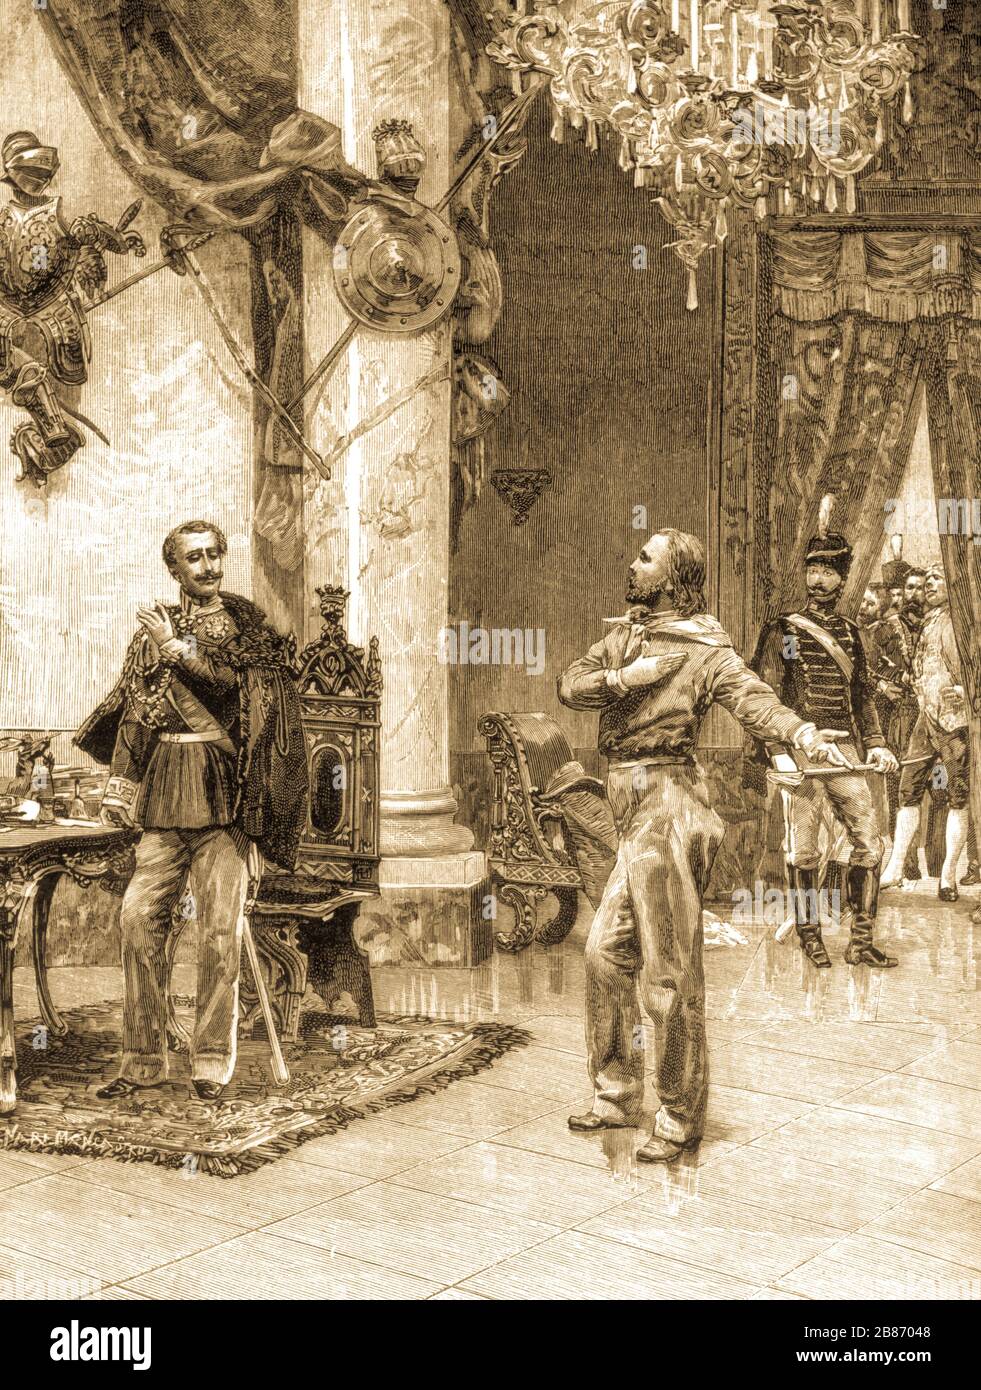 meeting between carlo alberto di savoia and giuseppe garibaldi in roverbella, 1848 Stock Photo